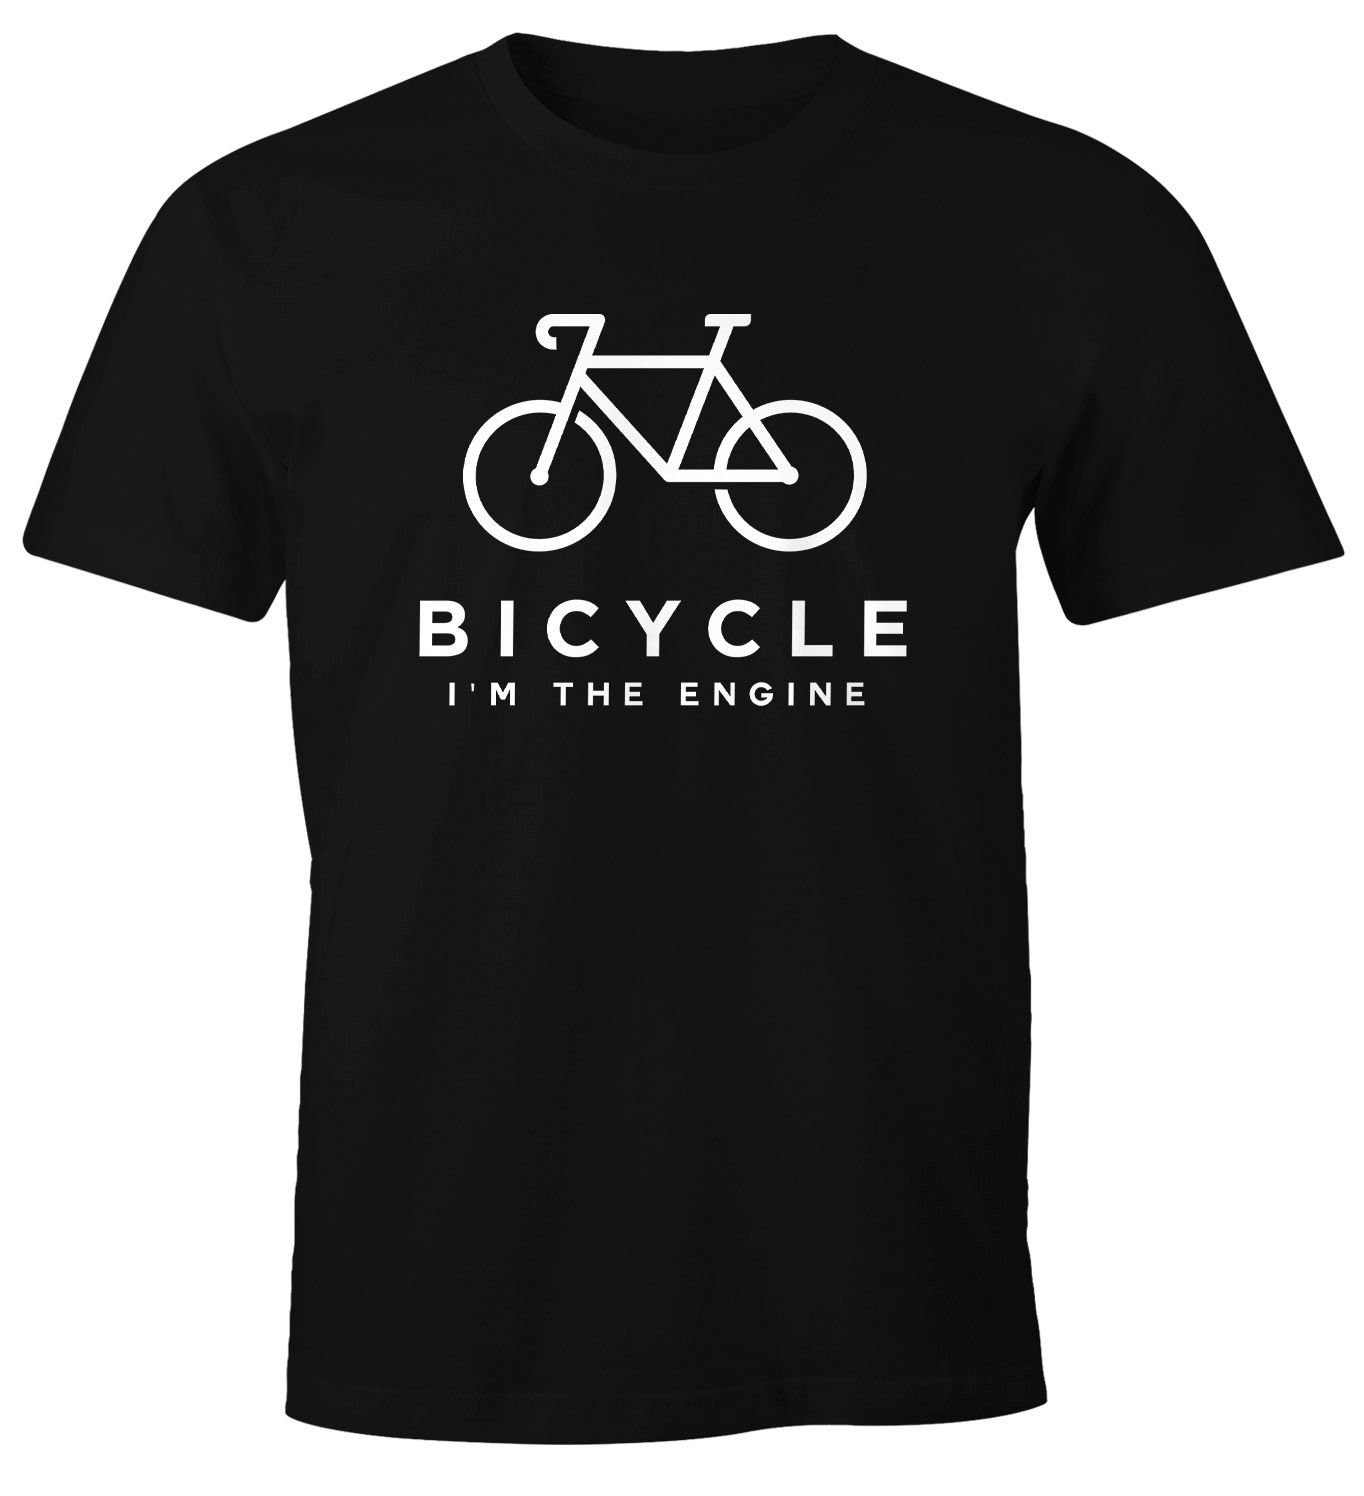 MoonWorks Print-Shirt Herren T-Shirt Fahrrad Sprüche Bicycle I'm the Engine Bike Rad Fun-Shirt Spruch lustig Moonworks® mit Print schwarz